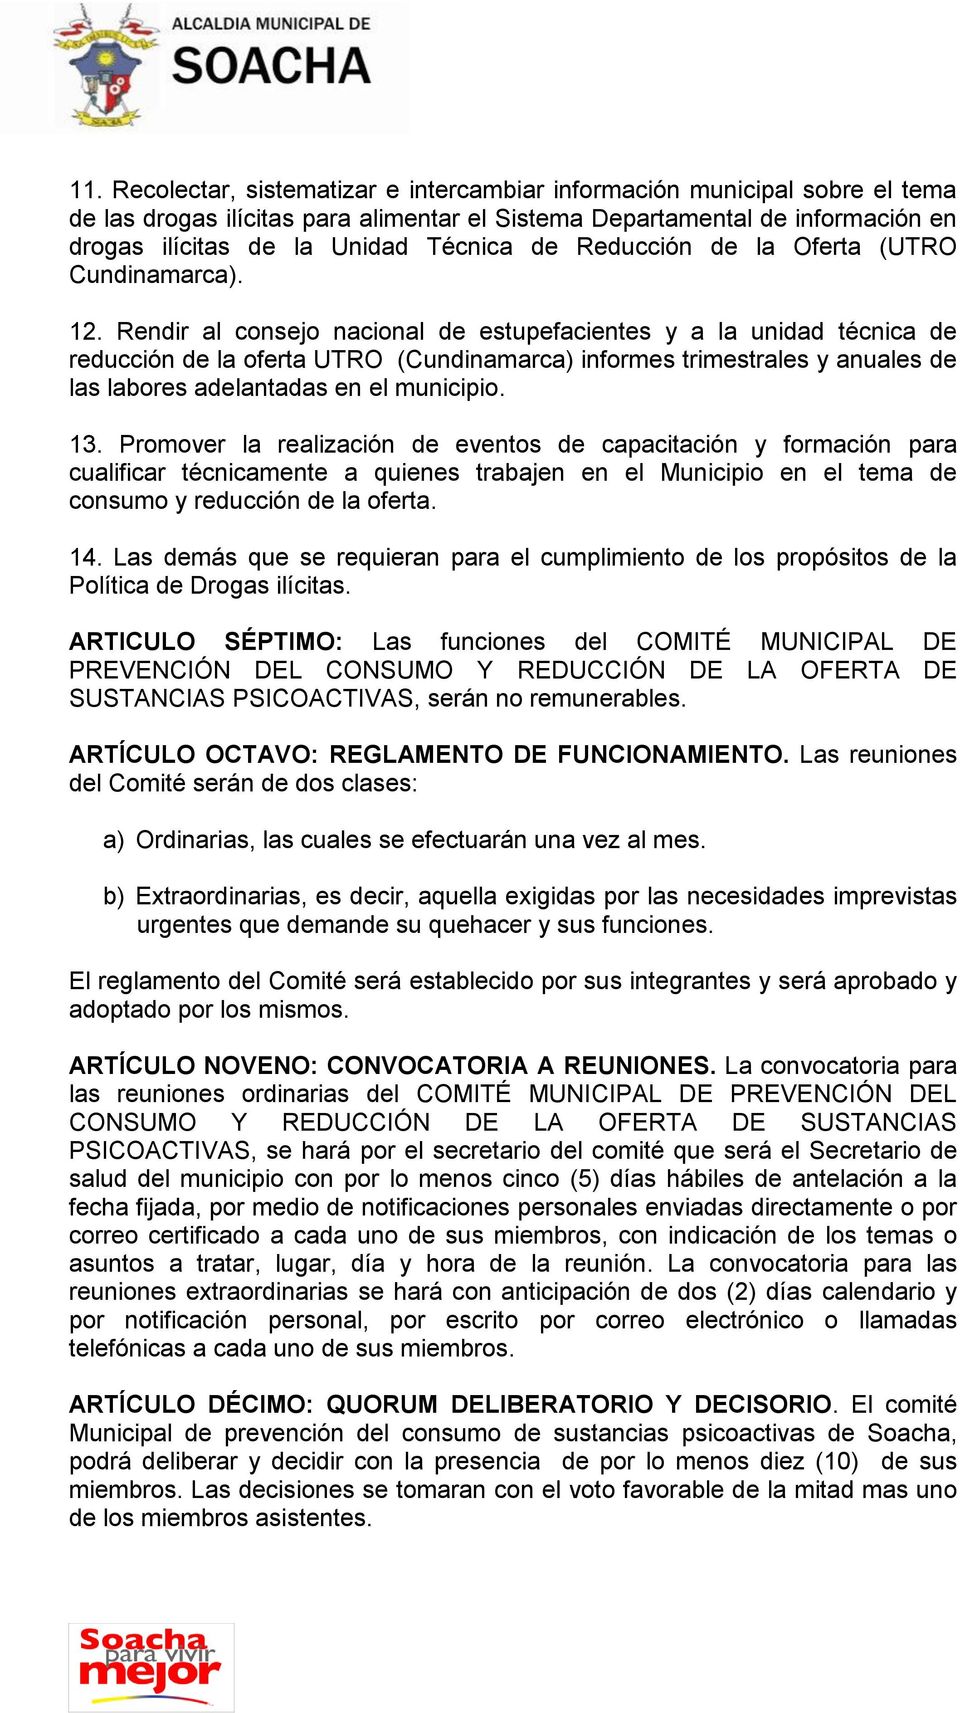 Rendir al consejo nacional de estupefacientes y a la unidad técnica de reducción de la oferta UTRO (Cundinamarca) informes trimestrales y anuales de las labores adelantadas en el municipio. 13.